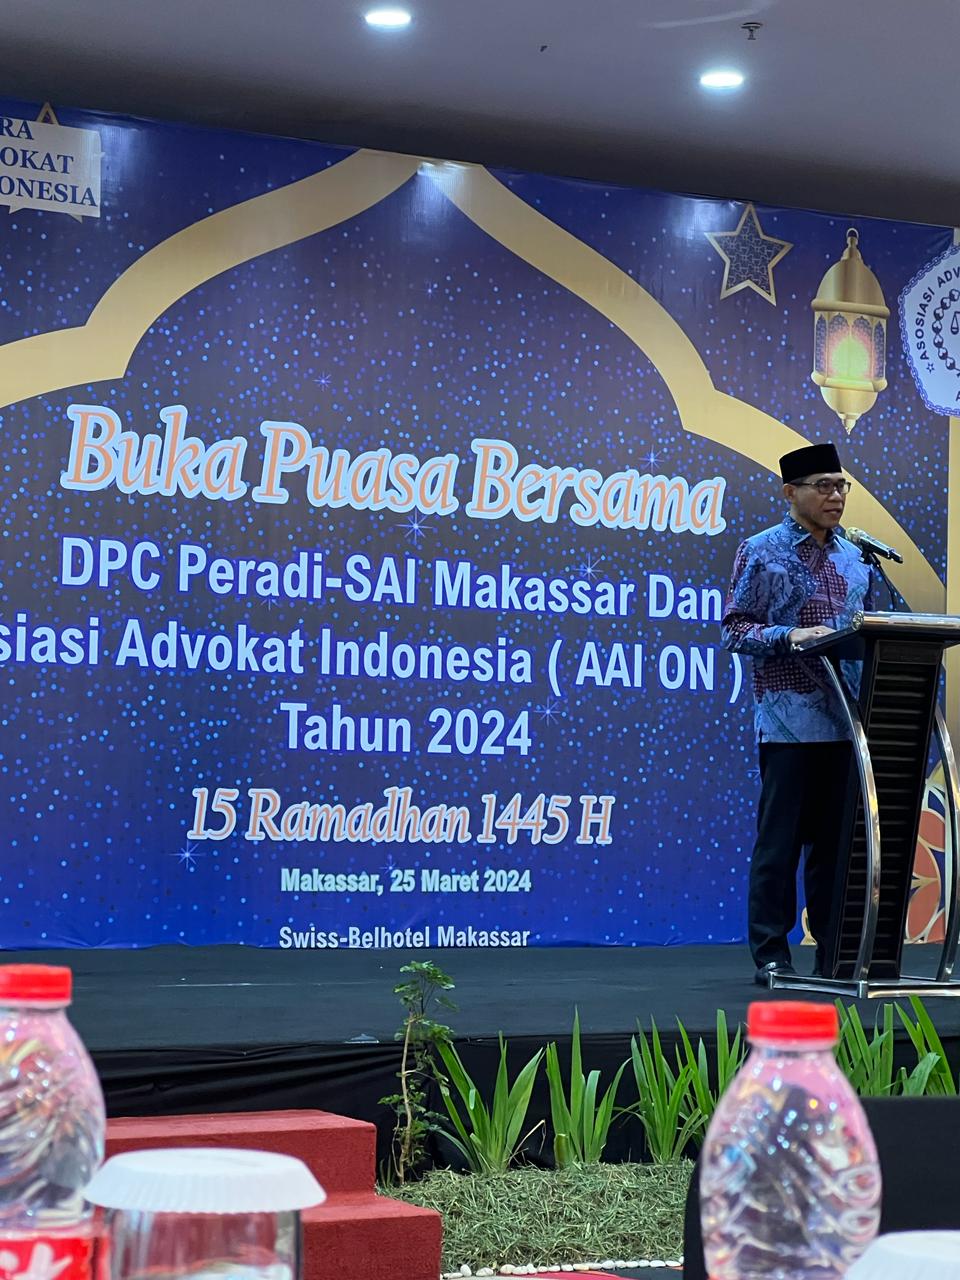 Dalam menyambut bulan Ramadhan DPC PERADI SAI Makassar buka puasa bersama dengan Asosiasi Advokat Indonesia (AAI On) Makassar untuk jalin silatuhrami, yang di adakan di Makassar di Swiss-Belhotel, Makassar pada 25 Maret 2024